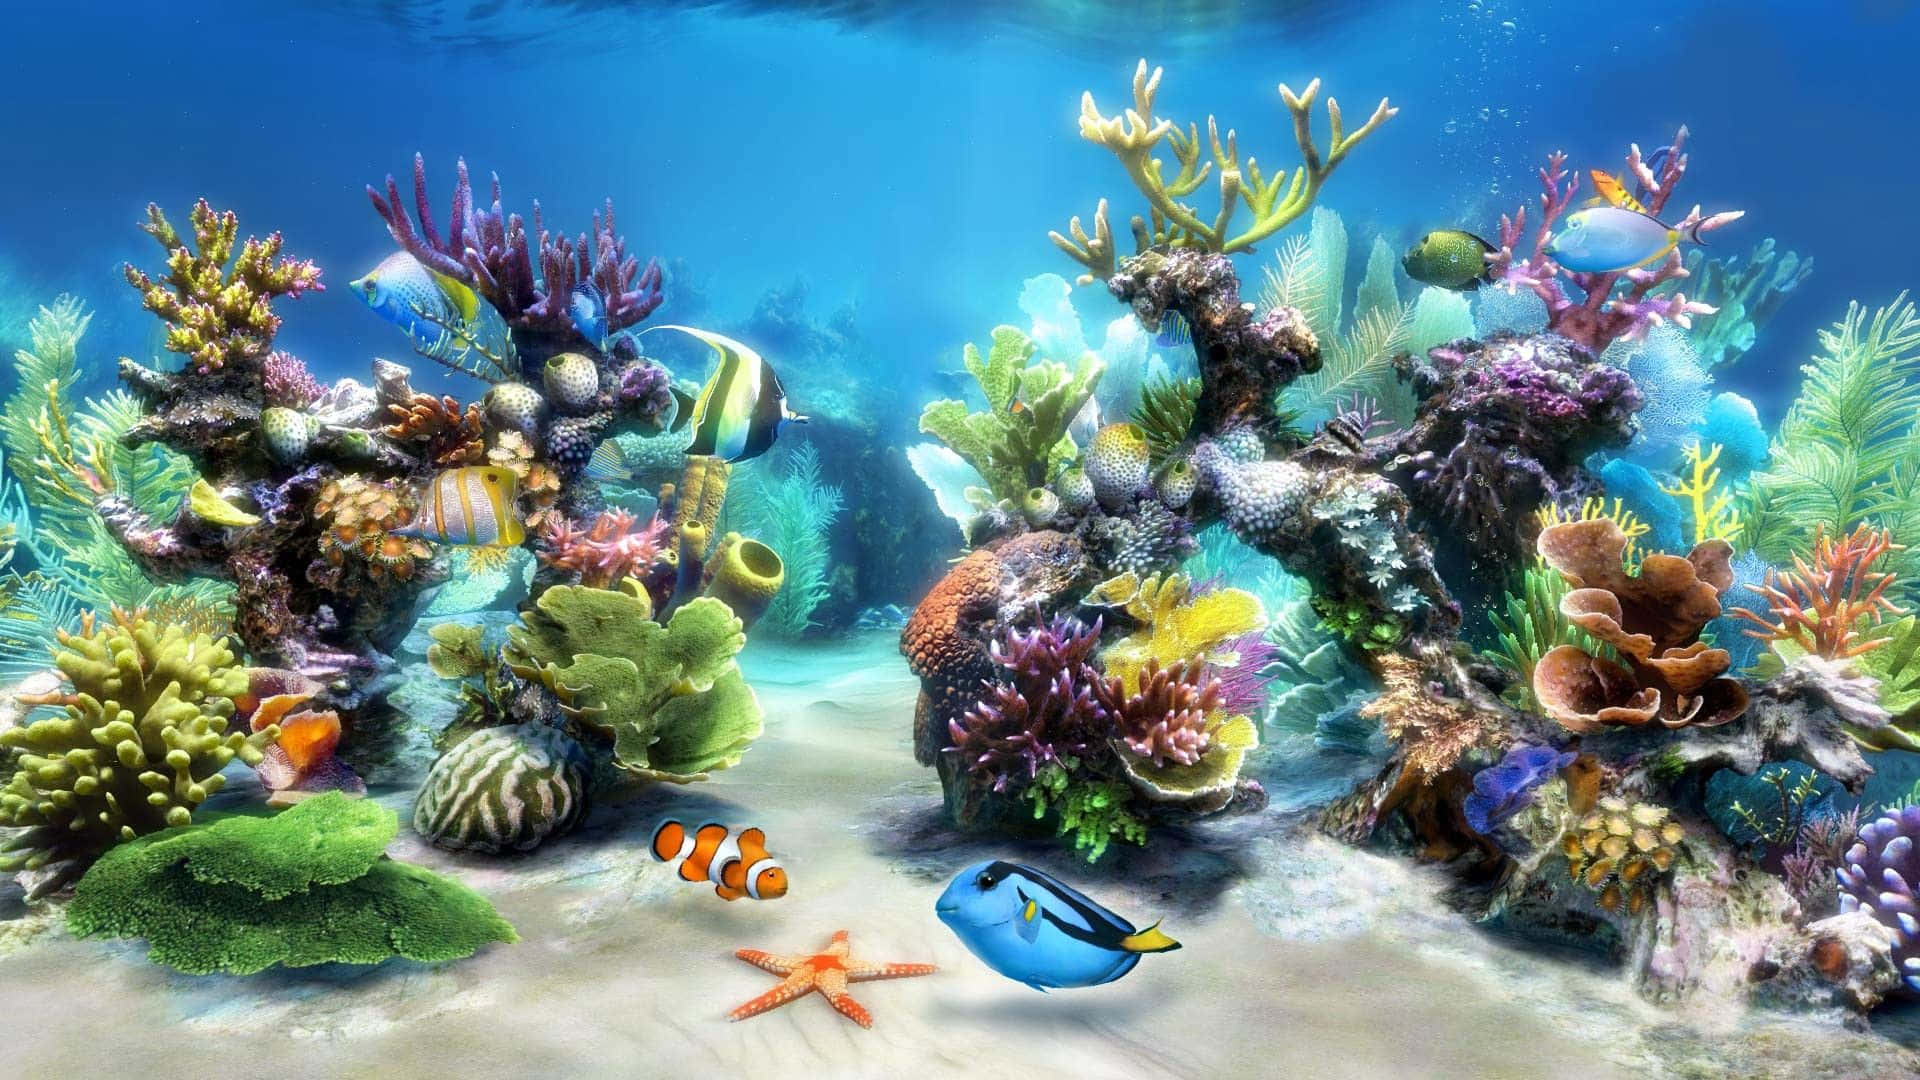 Realistiskbakgrund Av Nemo Och Dory I Ett Akvarium.